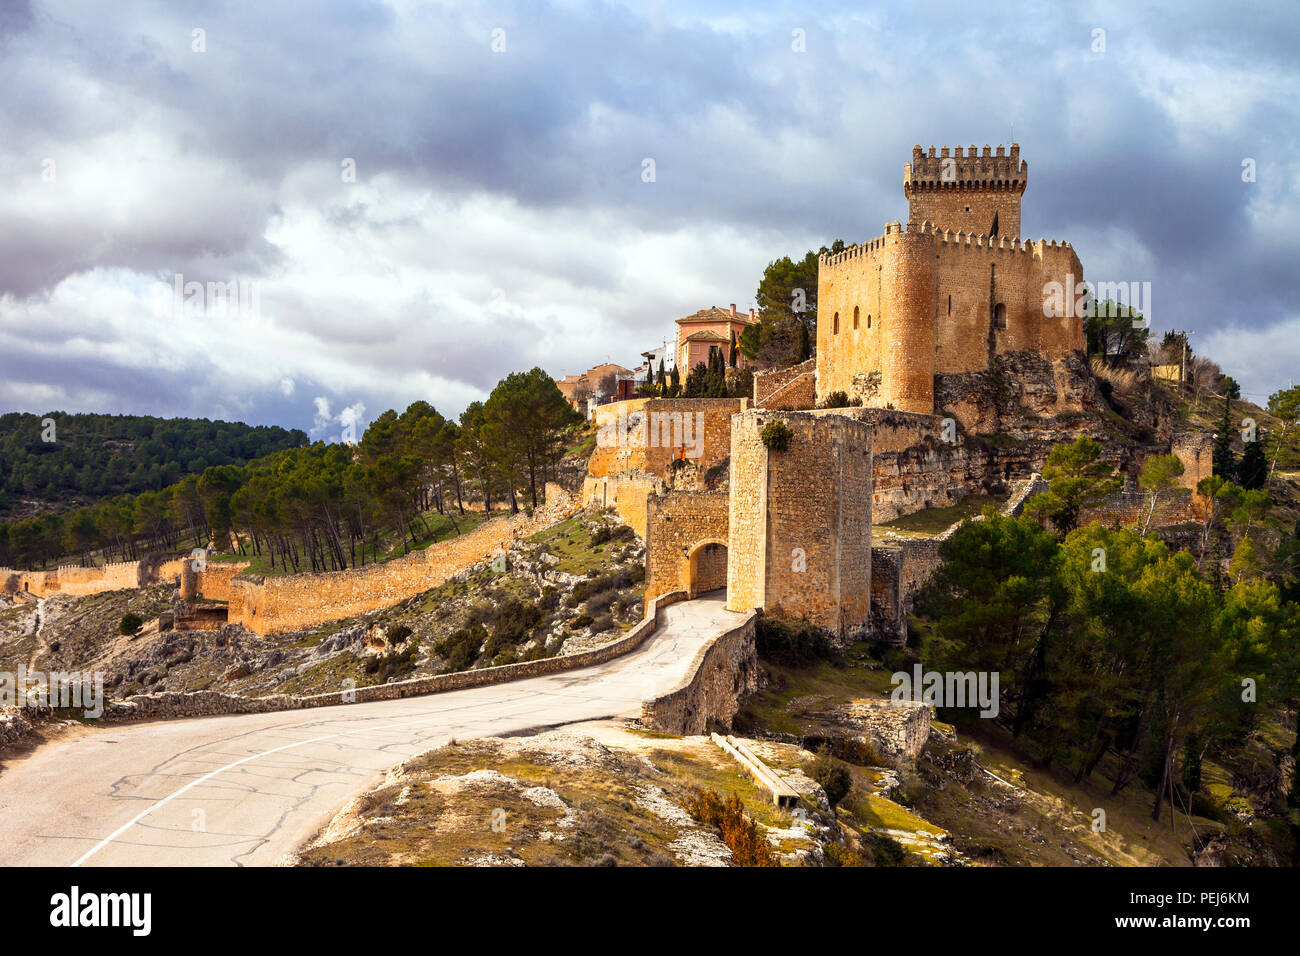 Beeindruckende Alcorcon mittelalterliche Burg, Panoramaaussicht, Spanien. Stockfoto